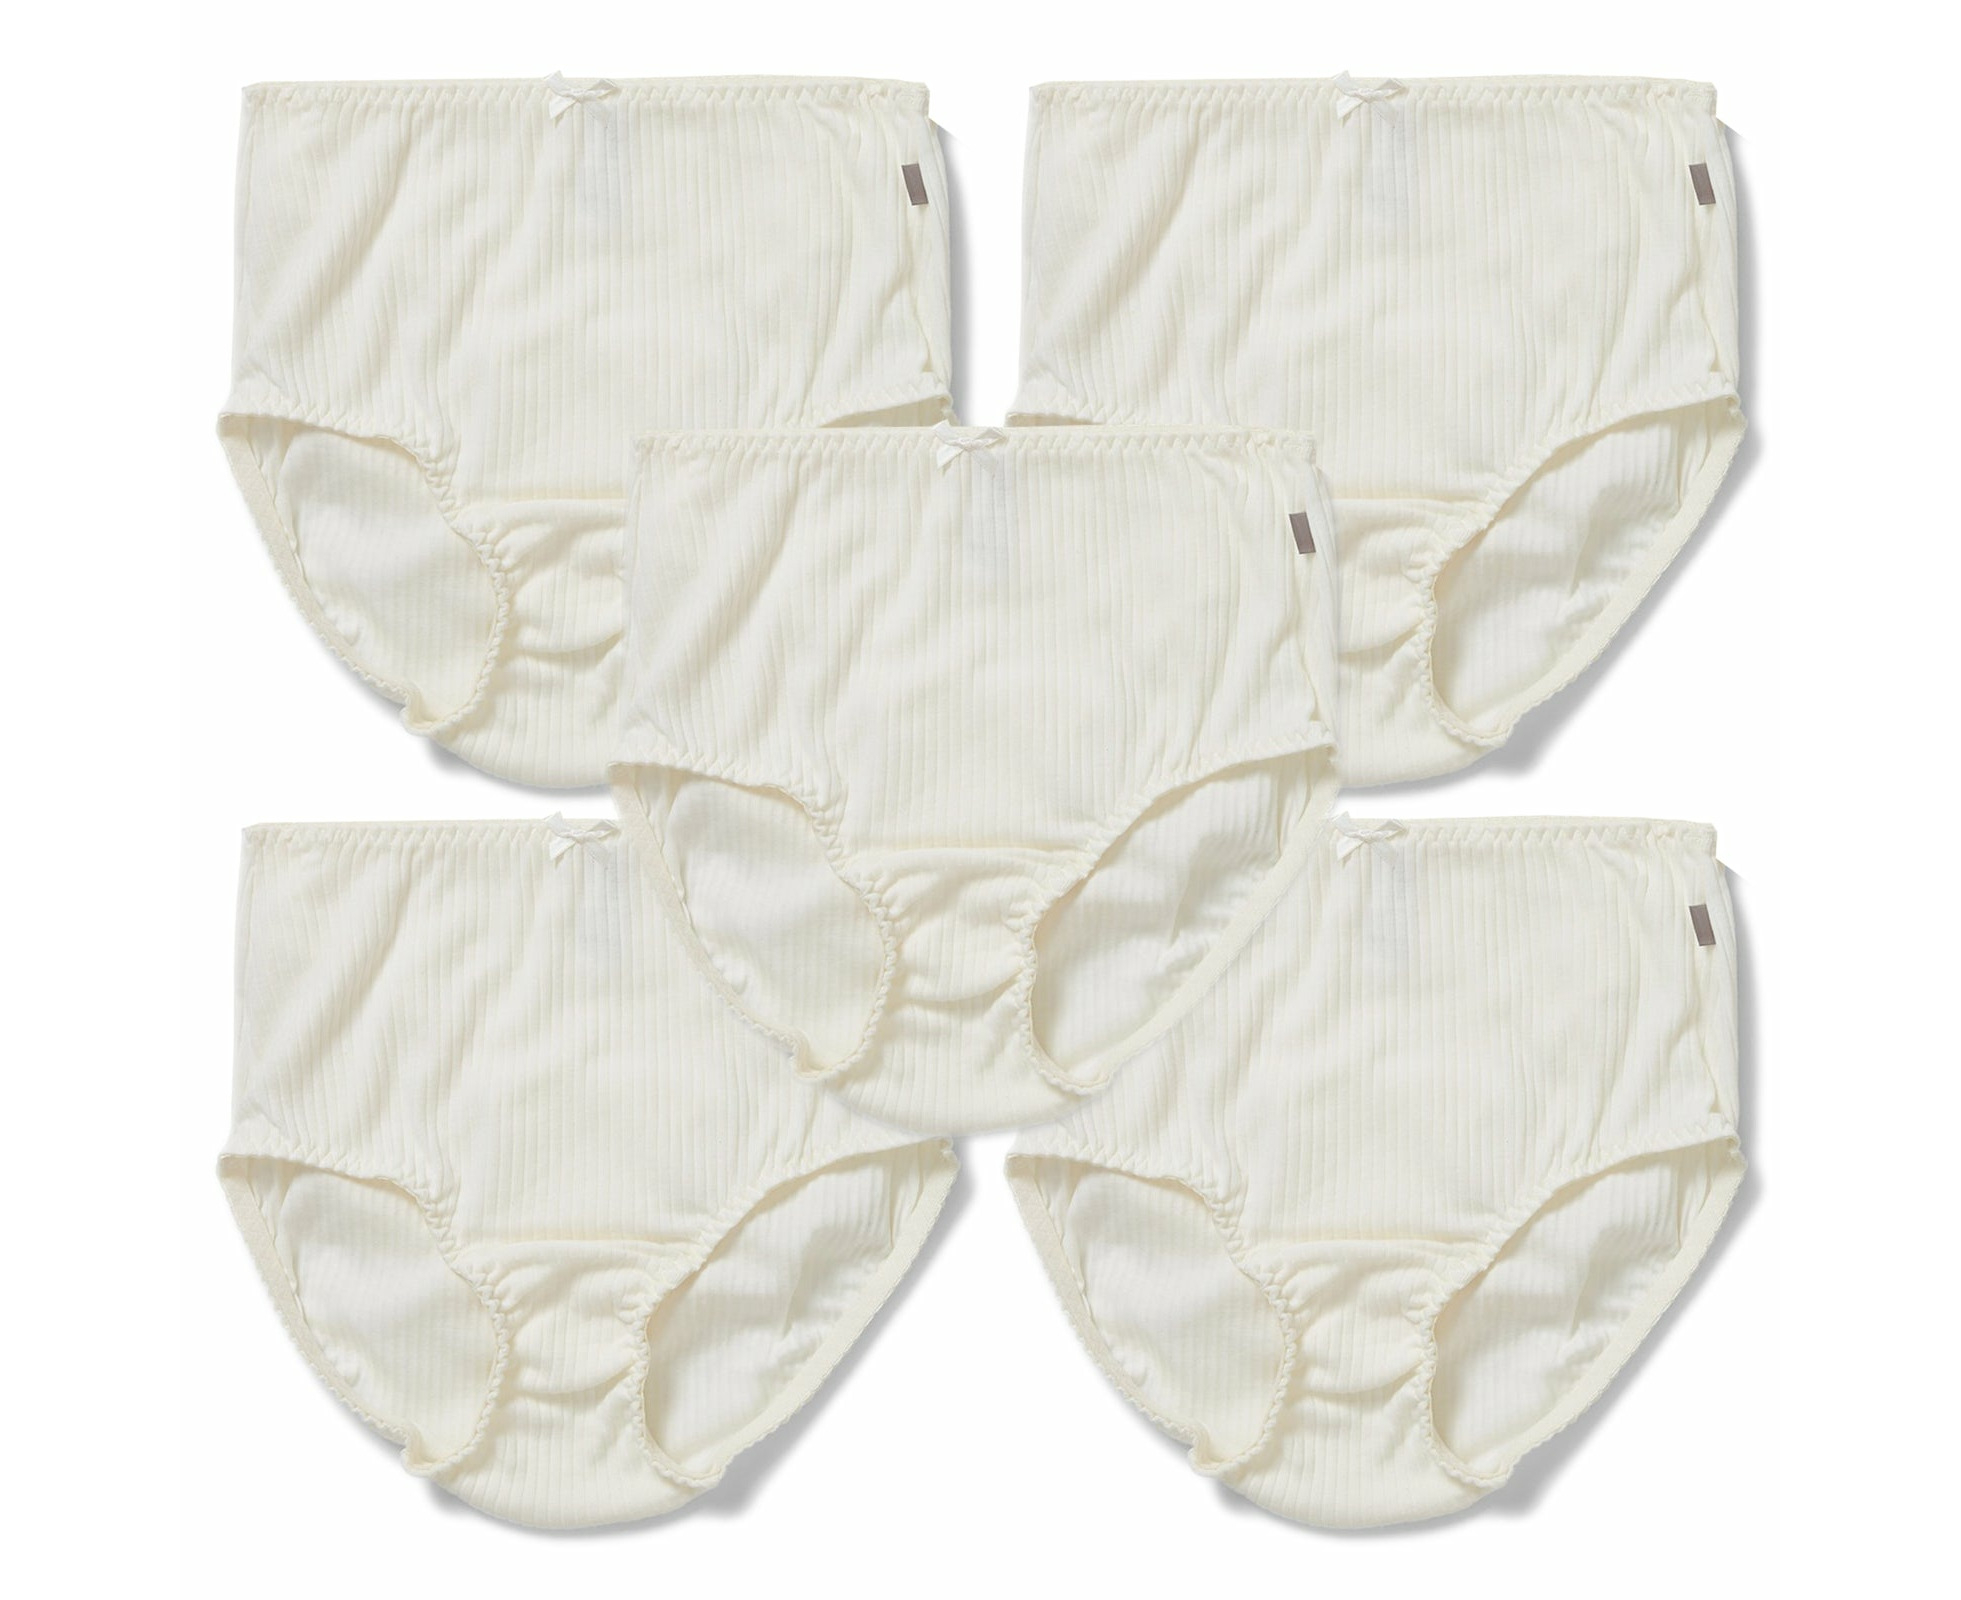 5 Pack Hestia Heroes Full Womens Underwear Undies Panties Briefs Cream ...